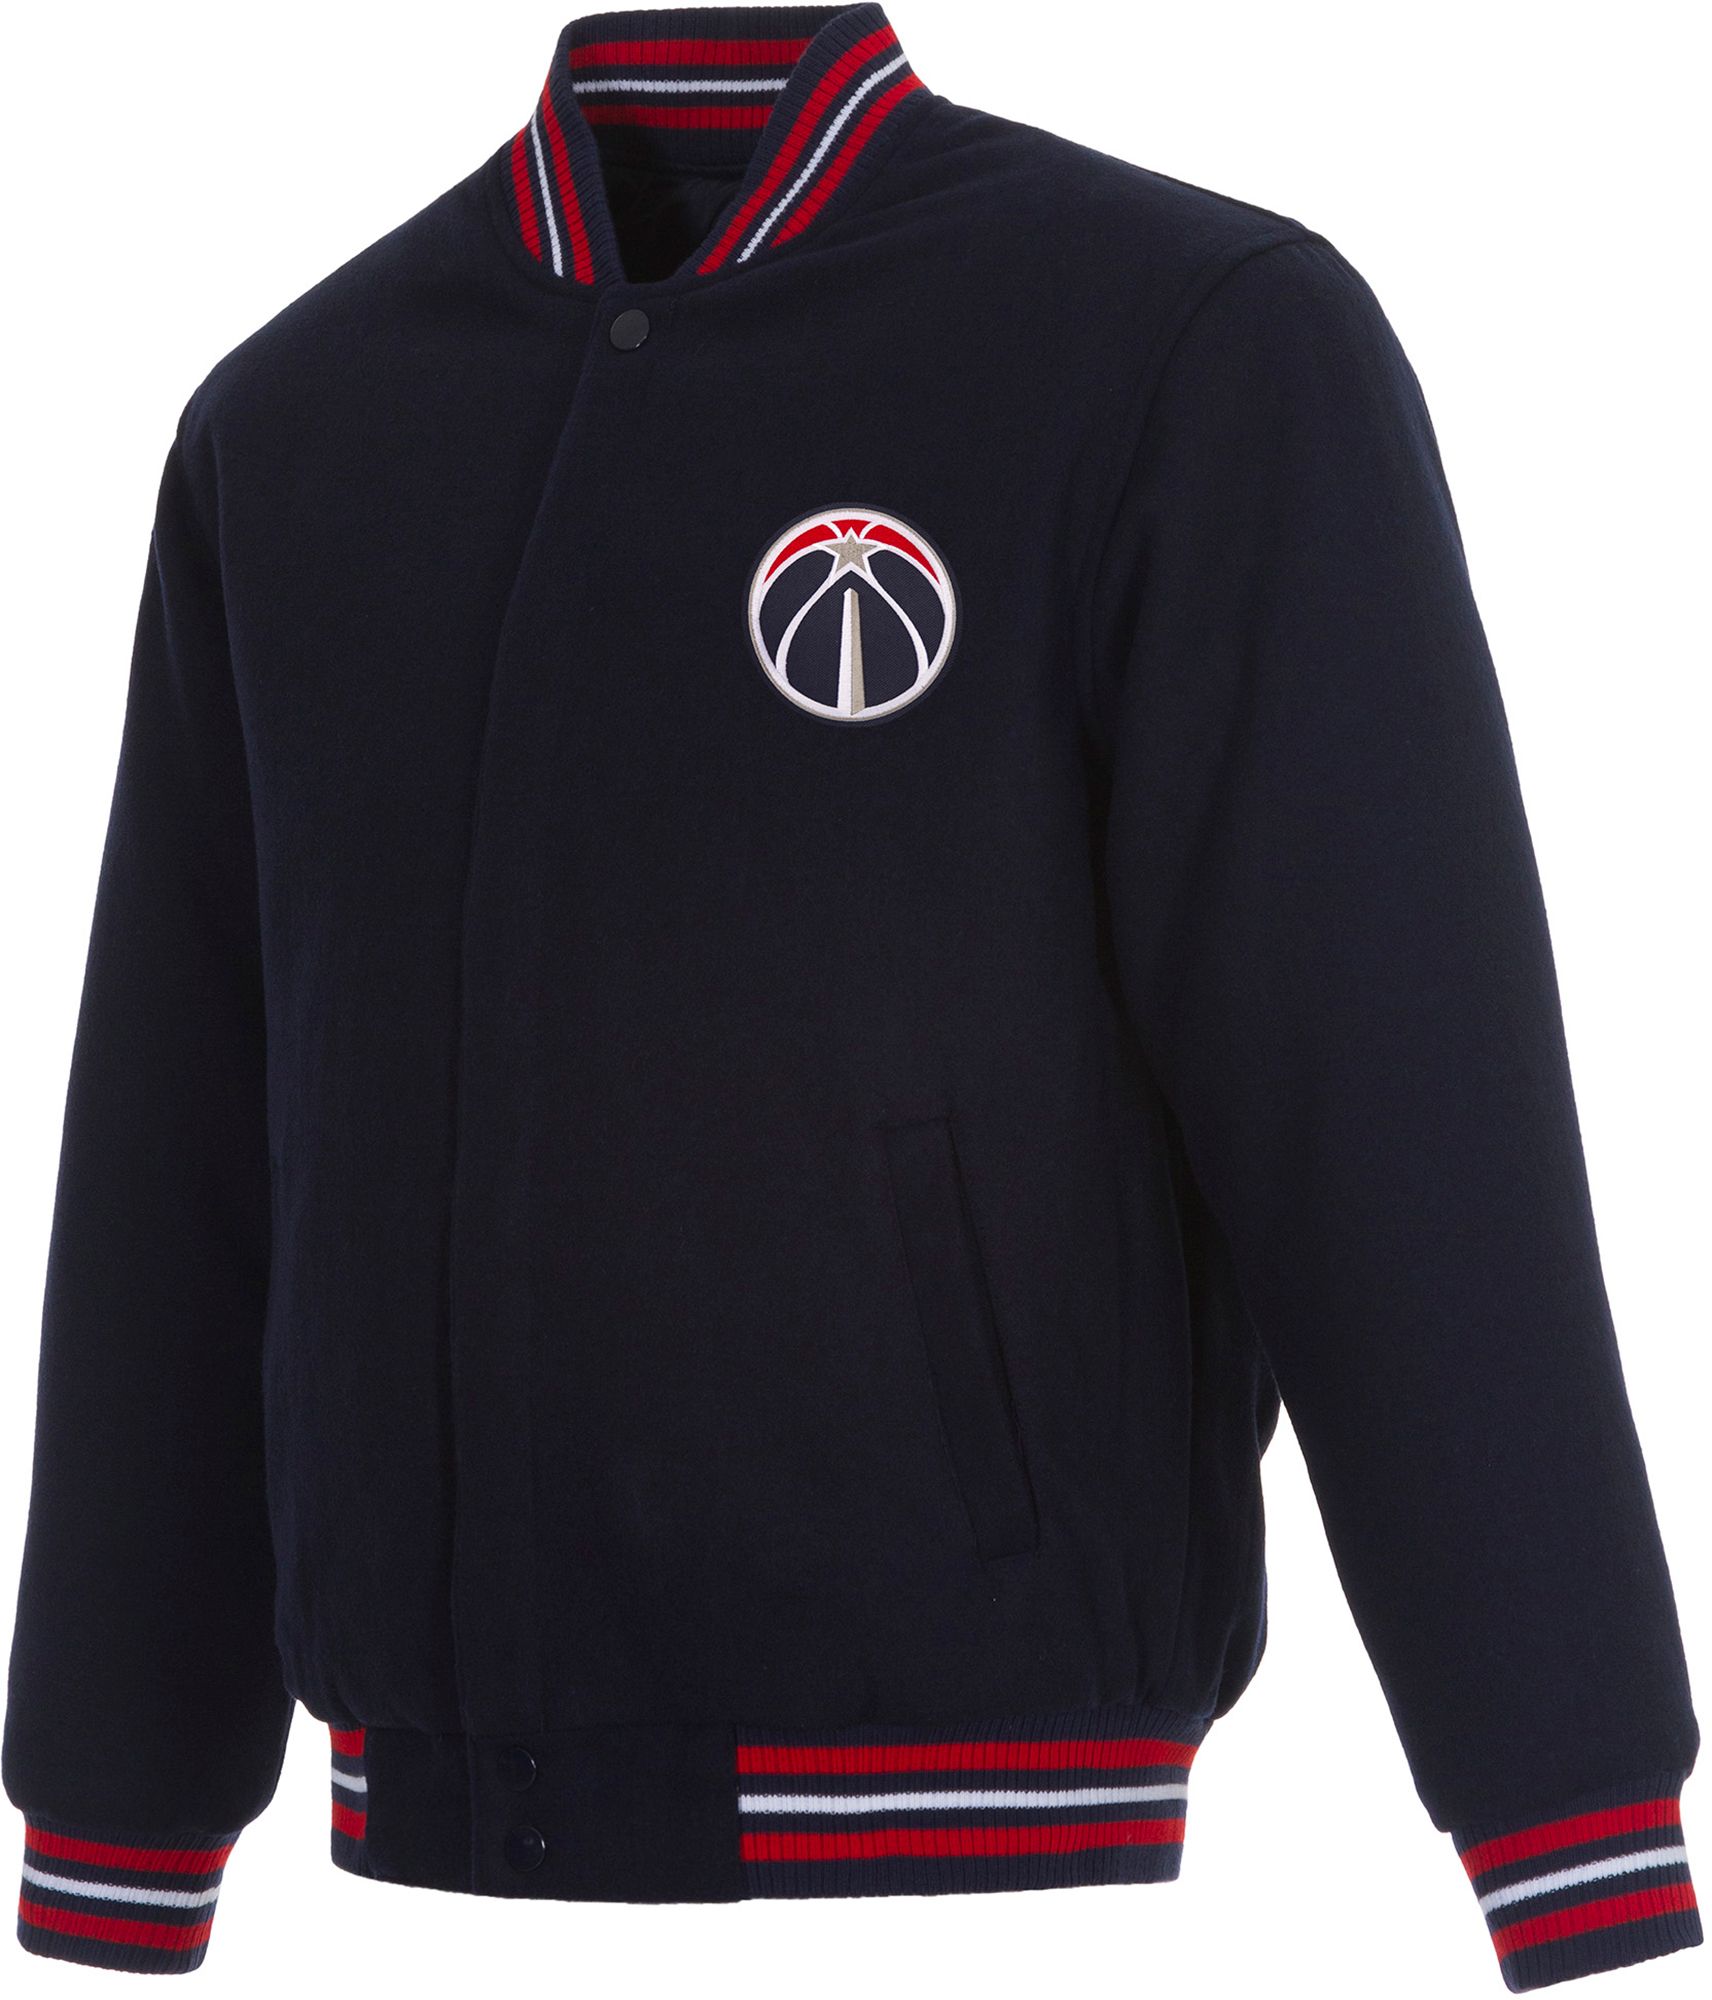 JH Design Men's Washington Wizards Navy Reversible Wool Jacket